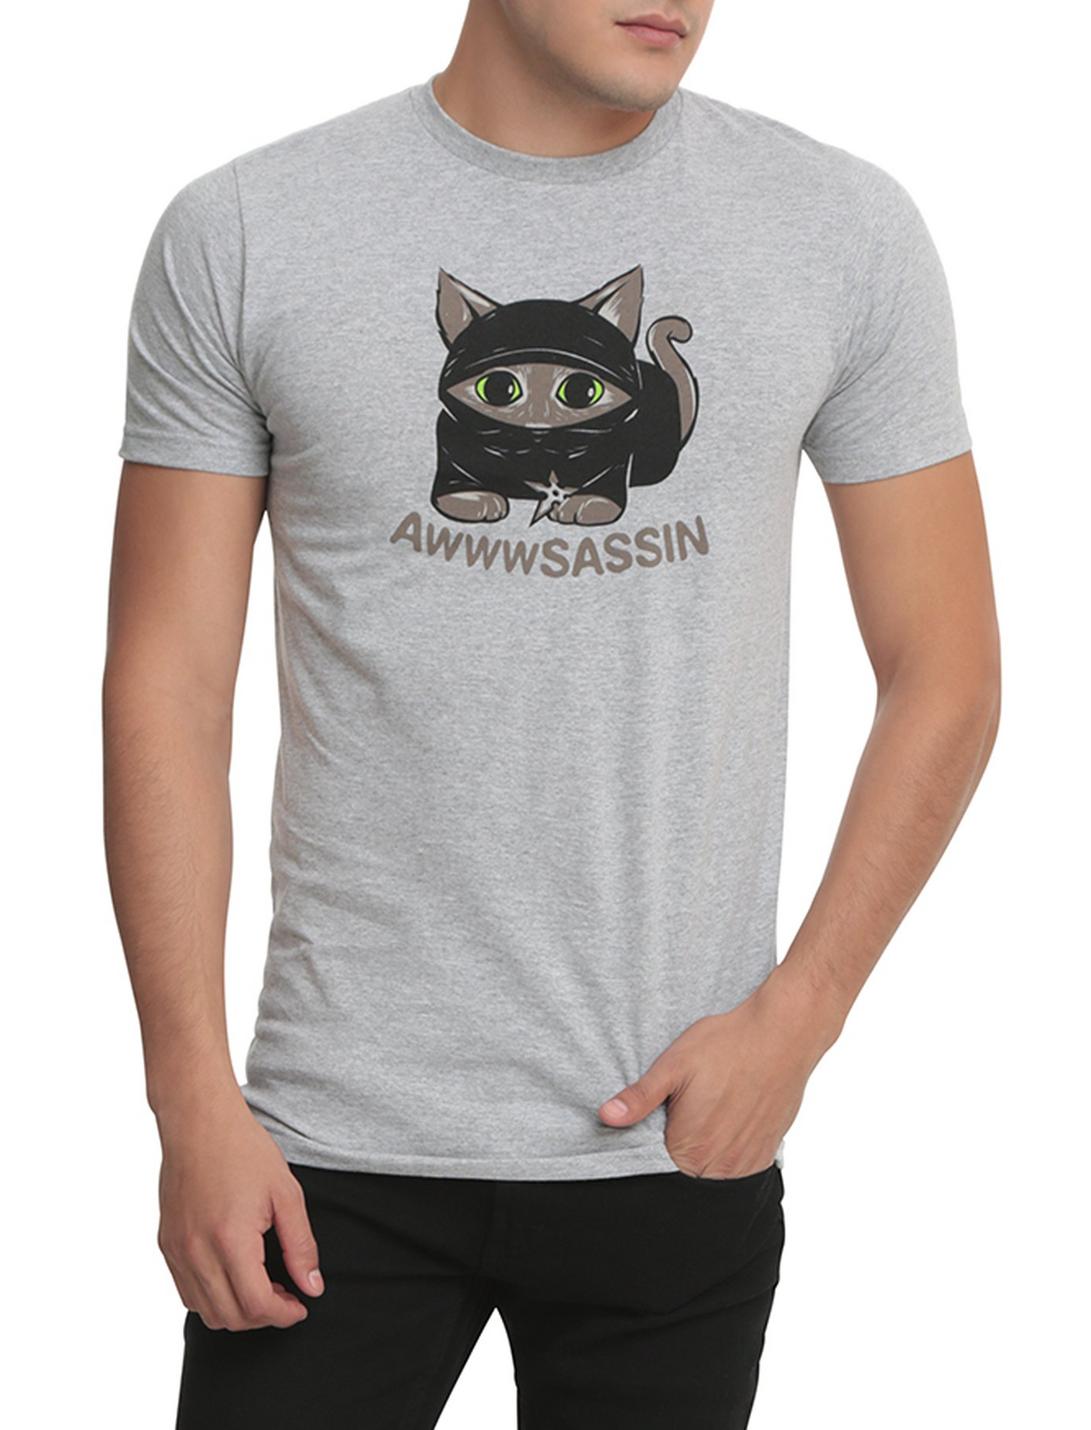 Kitten Awwwsassin T-Shirt, LIGHT GRAY, hi-res